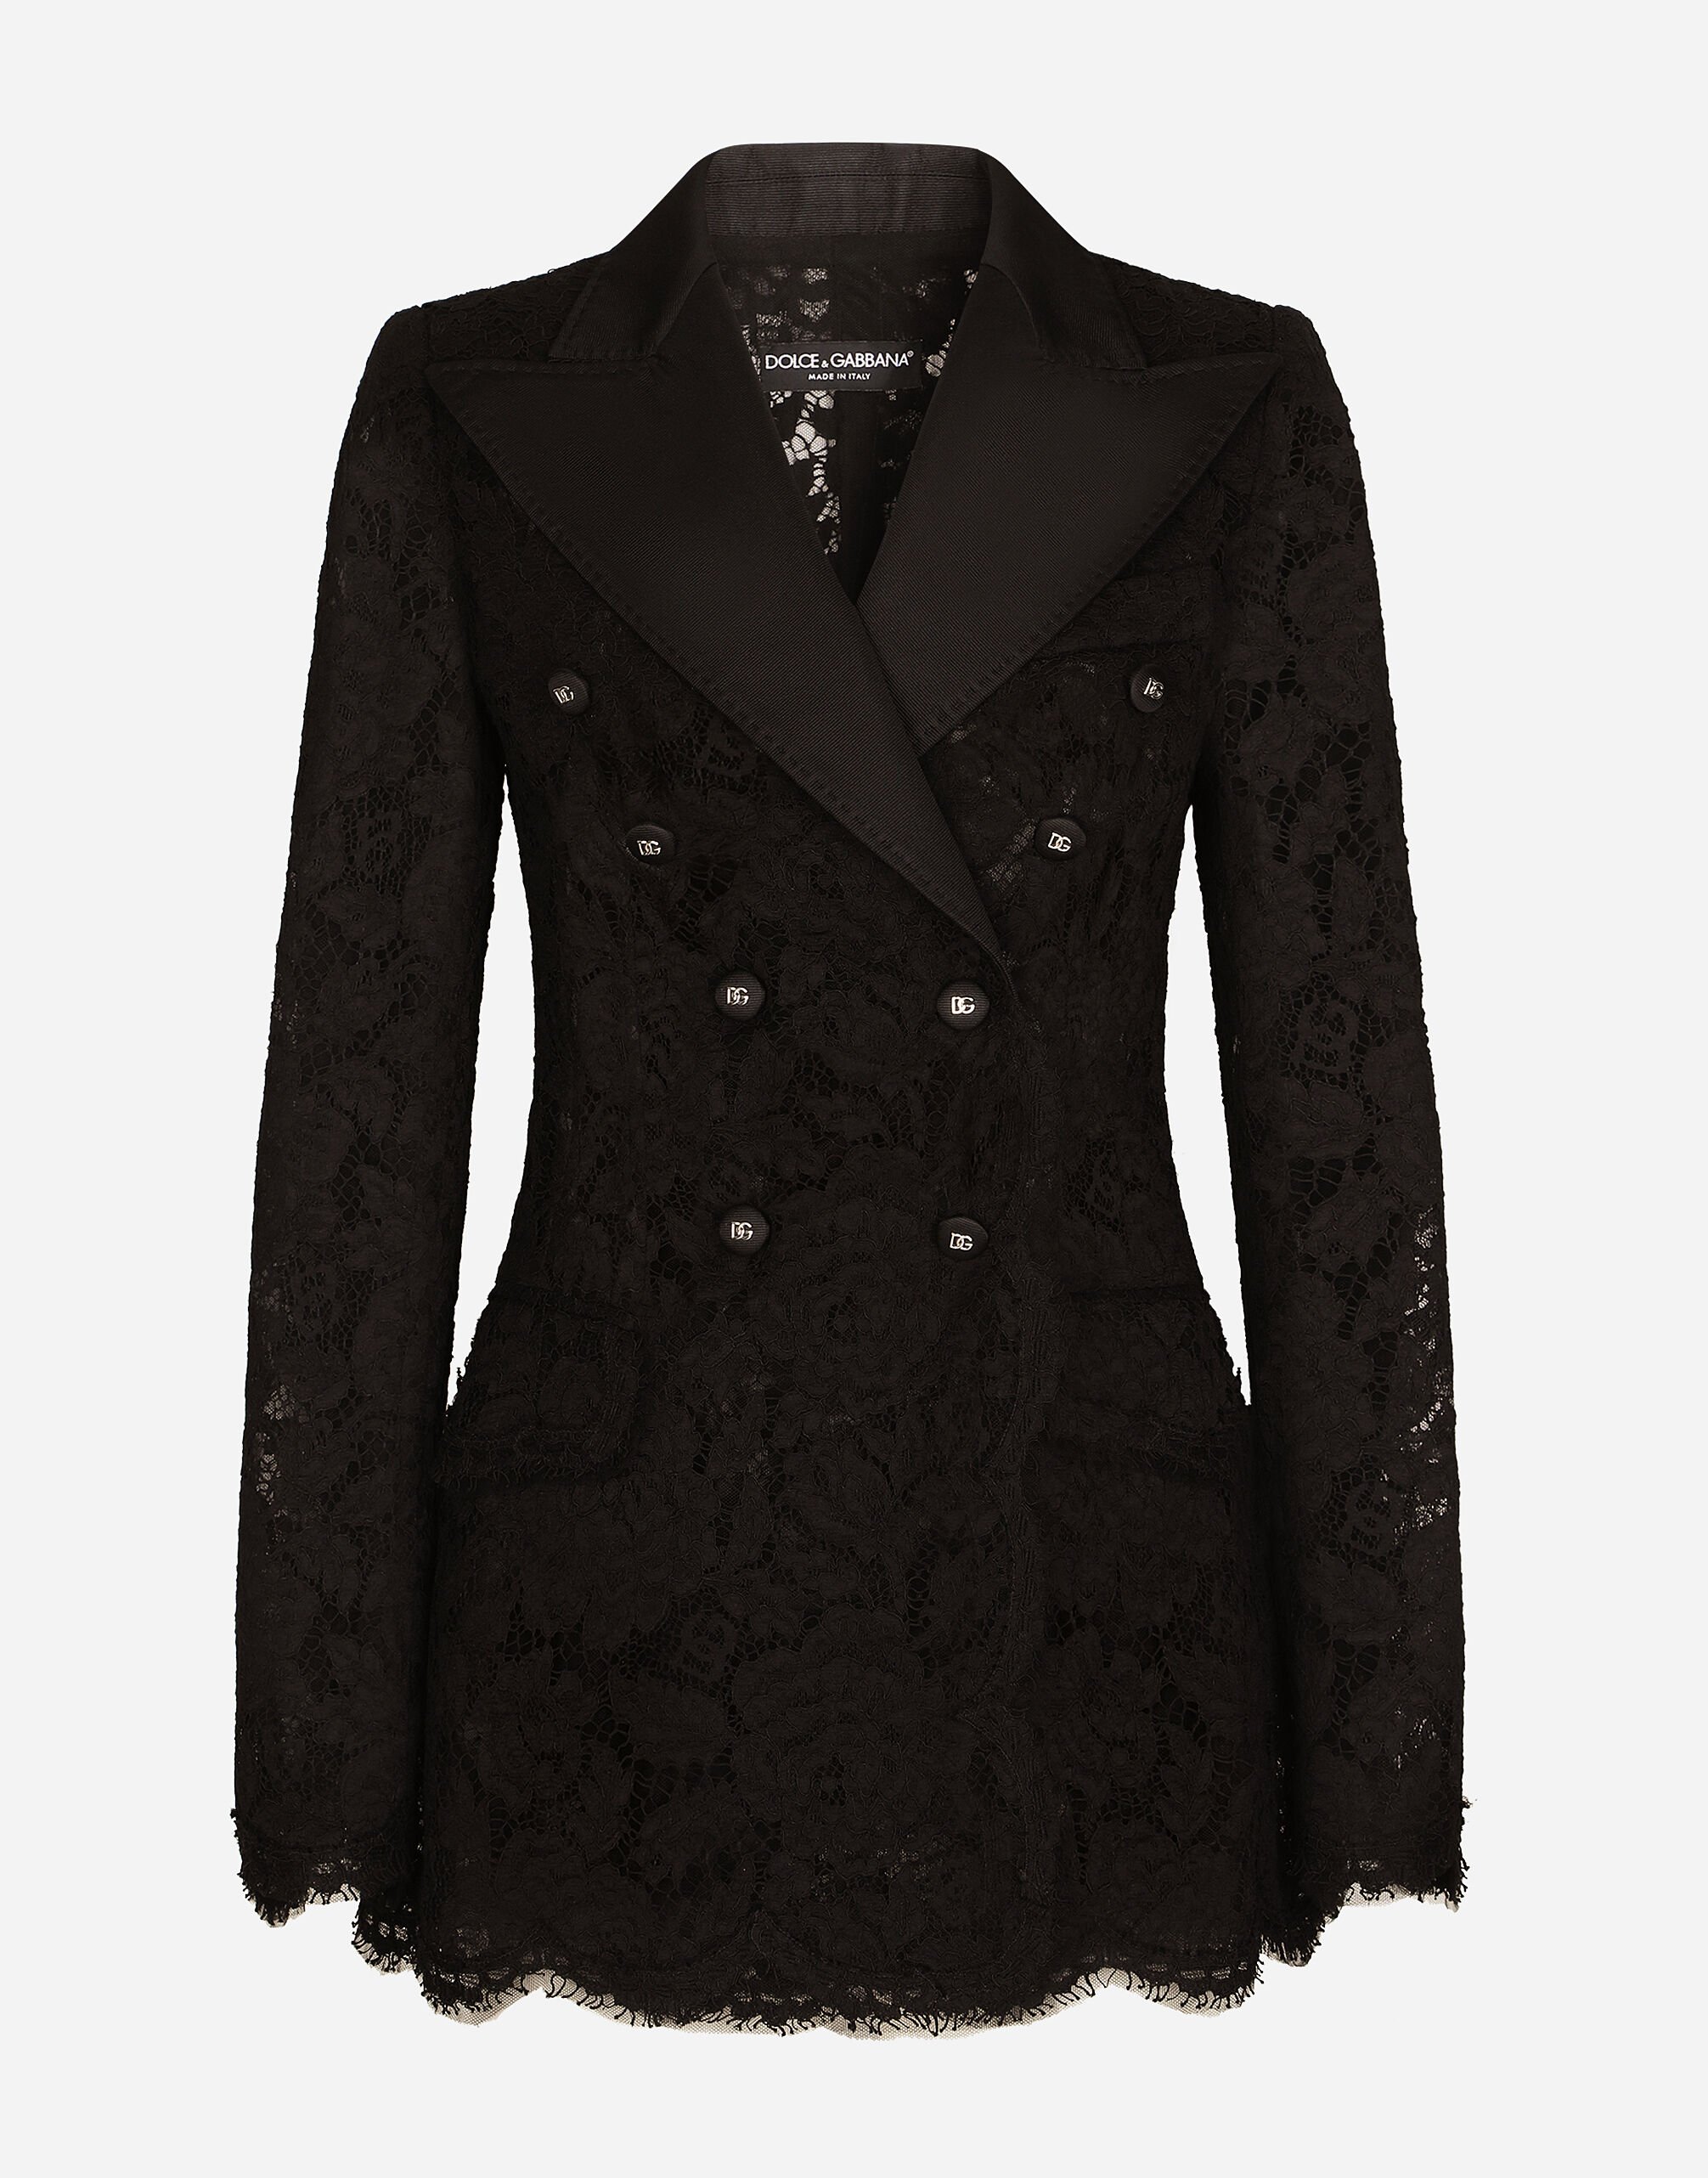 Dolce & Gabbana Branded stretch lace Turlington blazer Black F6ARTTFUGN7